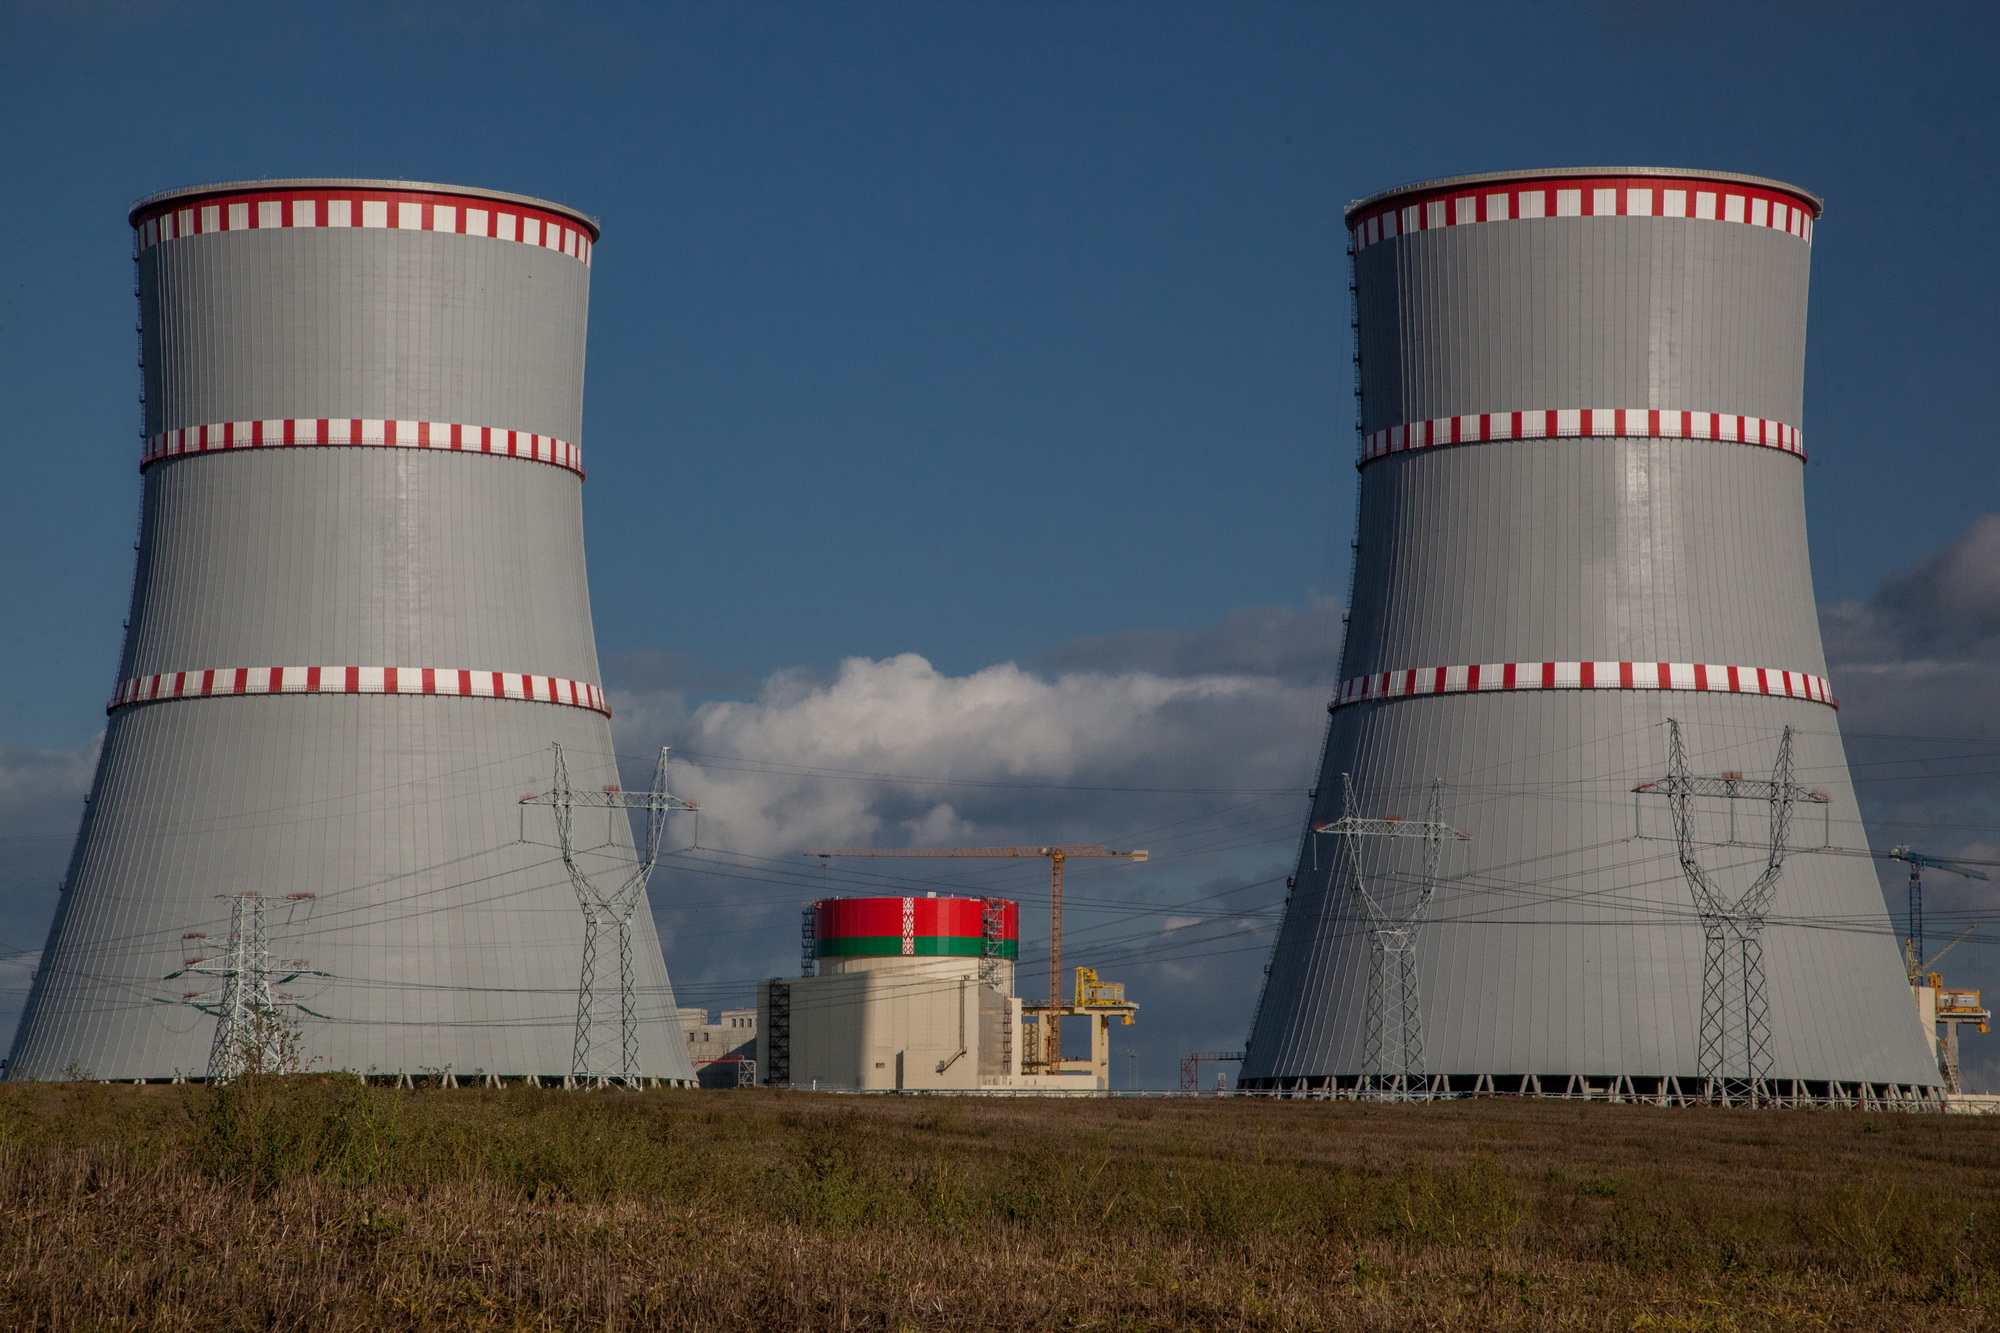 Выданы разрешительные документы на право завоза свежего ядерного топлива на БелАЭС